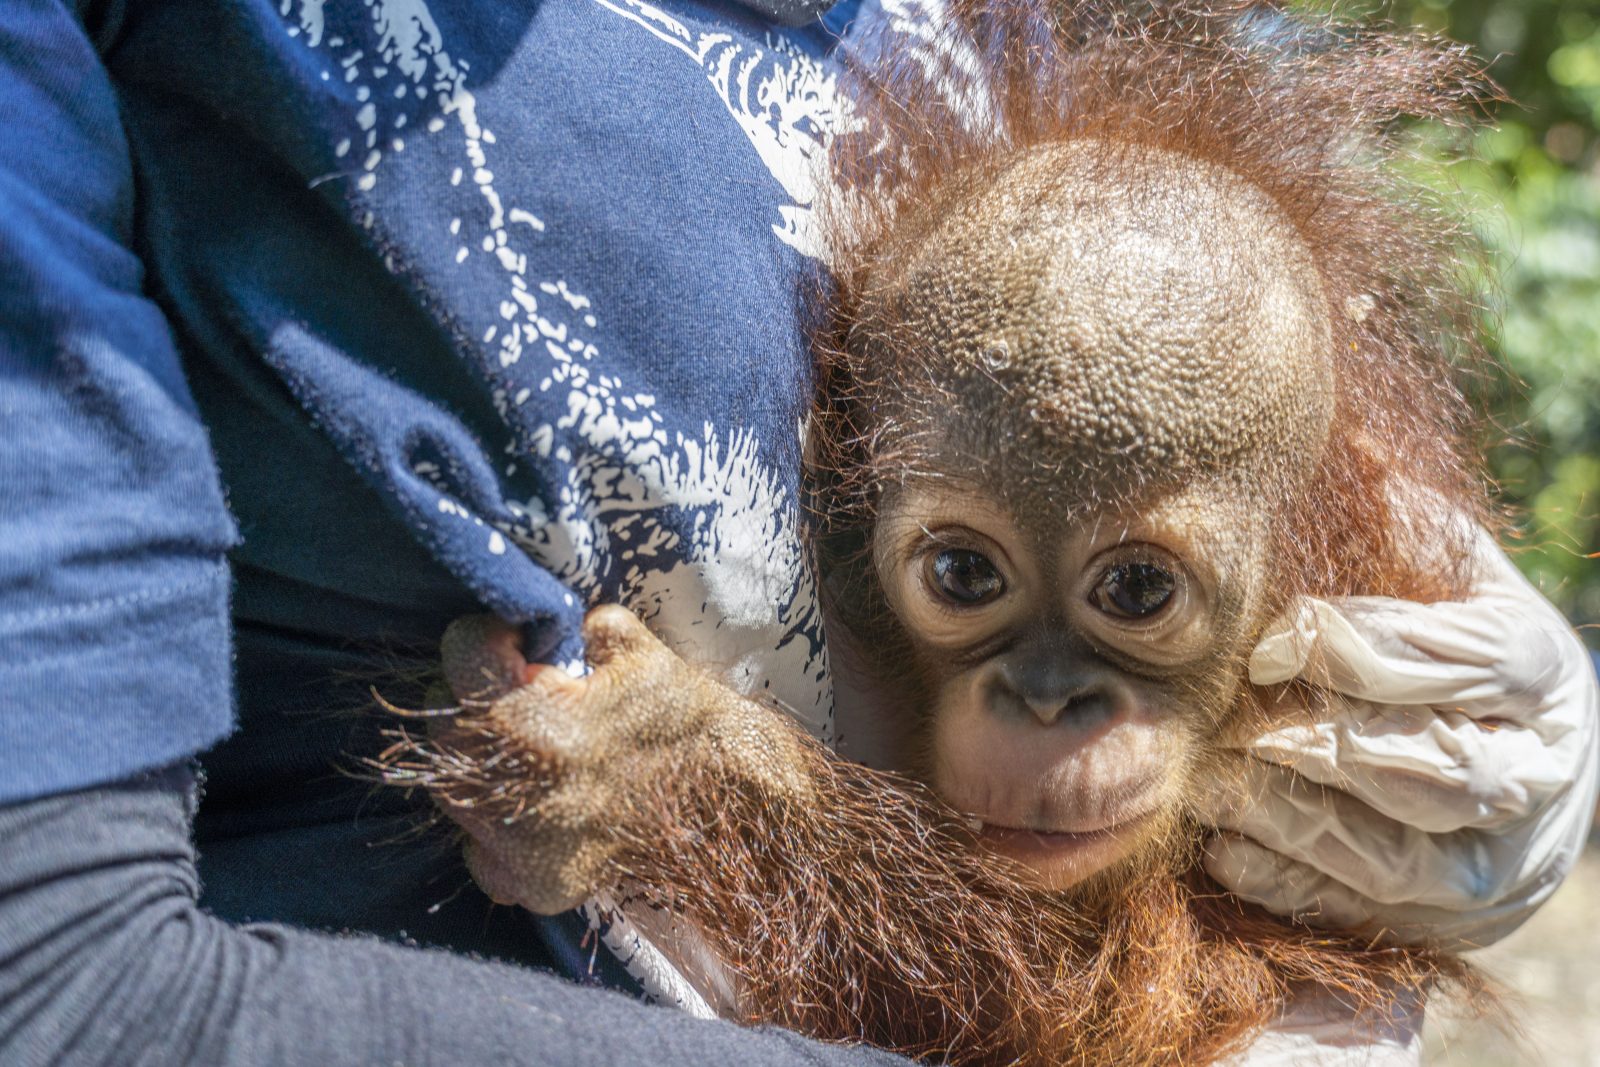 Potensi Penularan Penyakit melalui Pemeliharaan Satwa Liar, BKSDA dan IAR Selamatkan Bayi Orangutan dari Pemeliharaan Ilegal